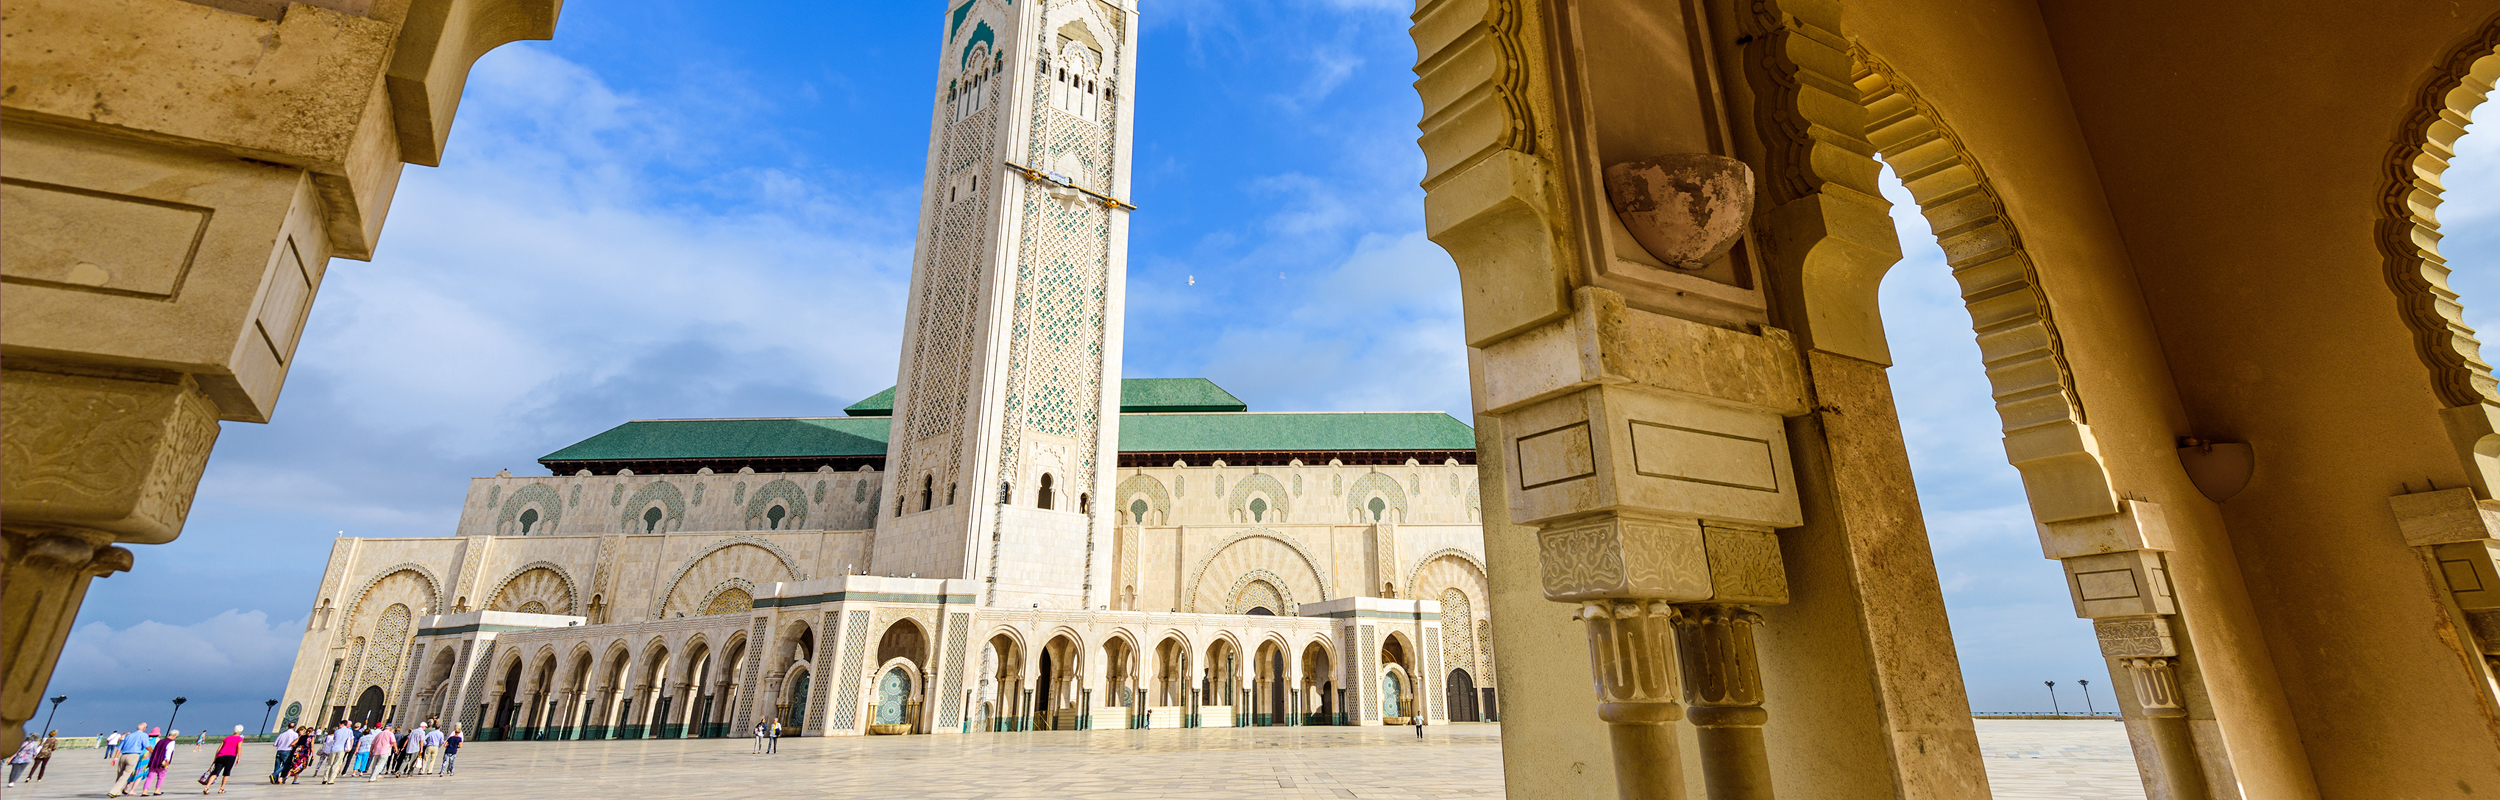 Réserver vos prochaines vacances à Casablanca avec Liege Airport